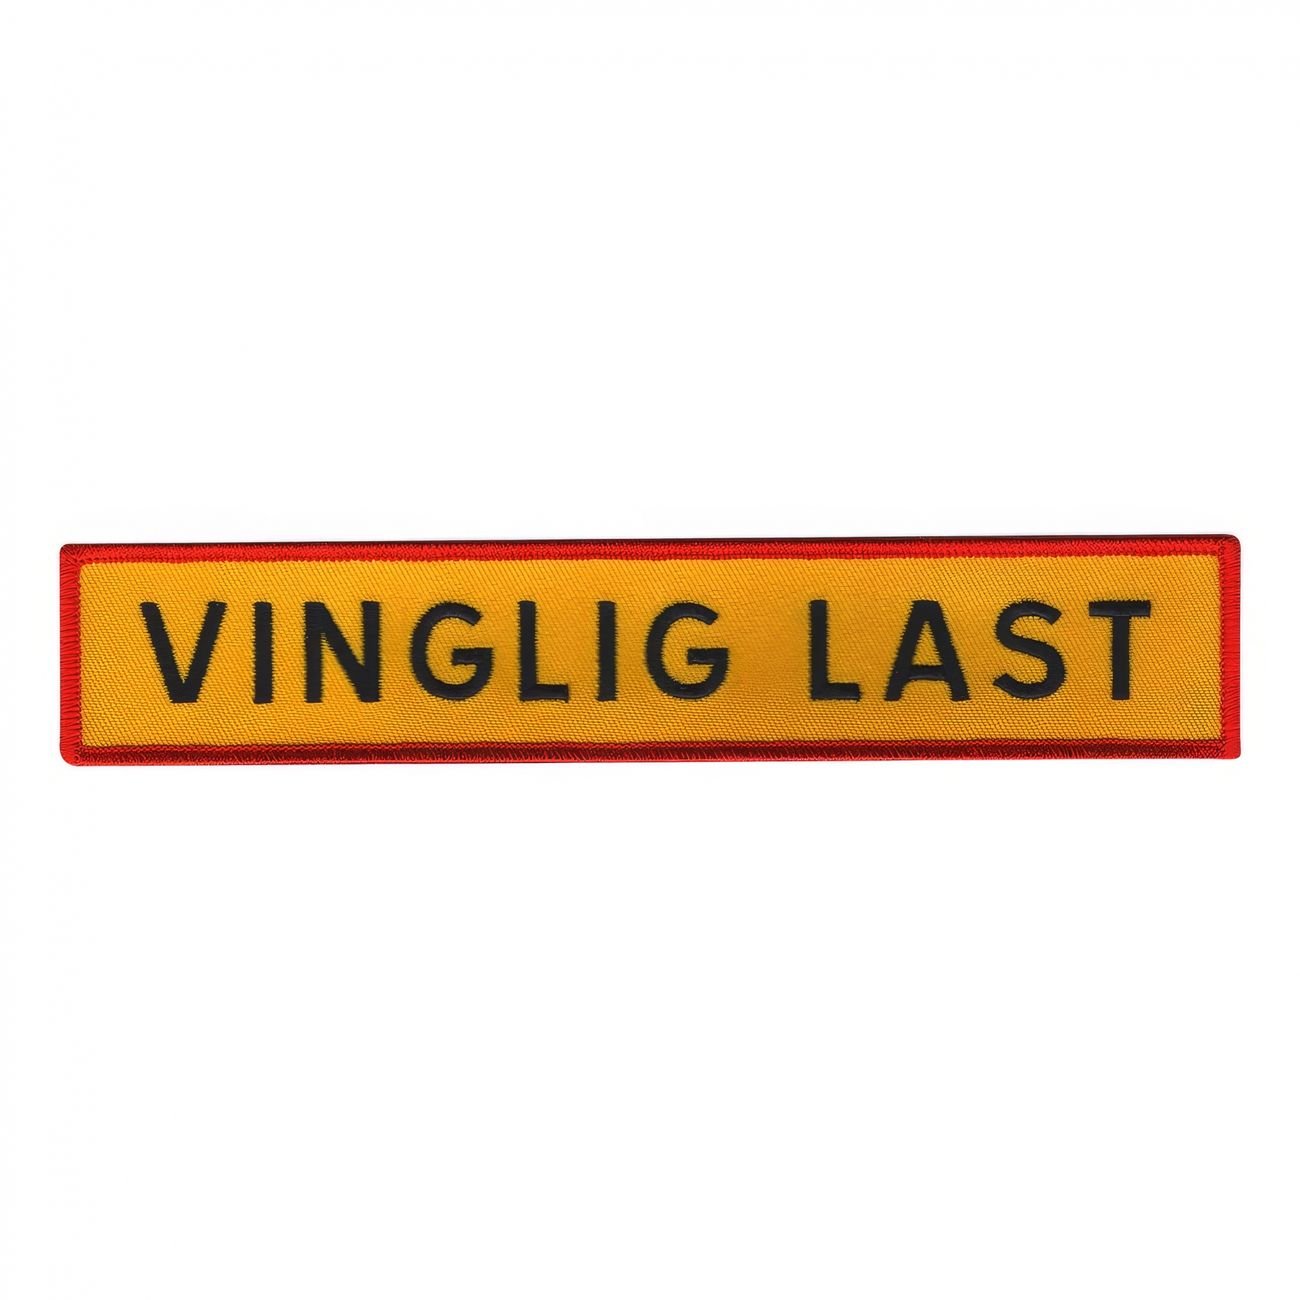 tygmarke-vinglig-last-a-94510-1